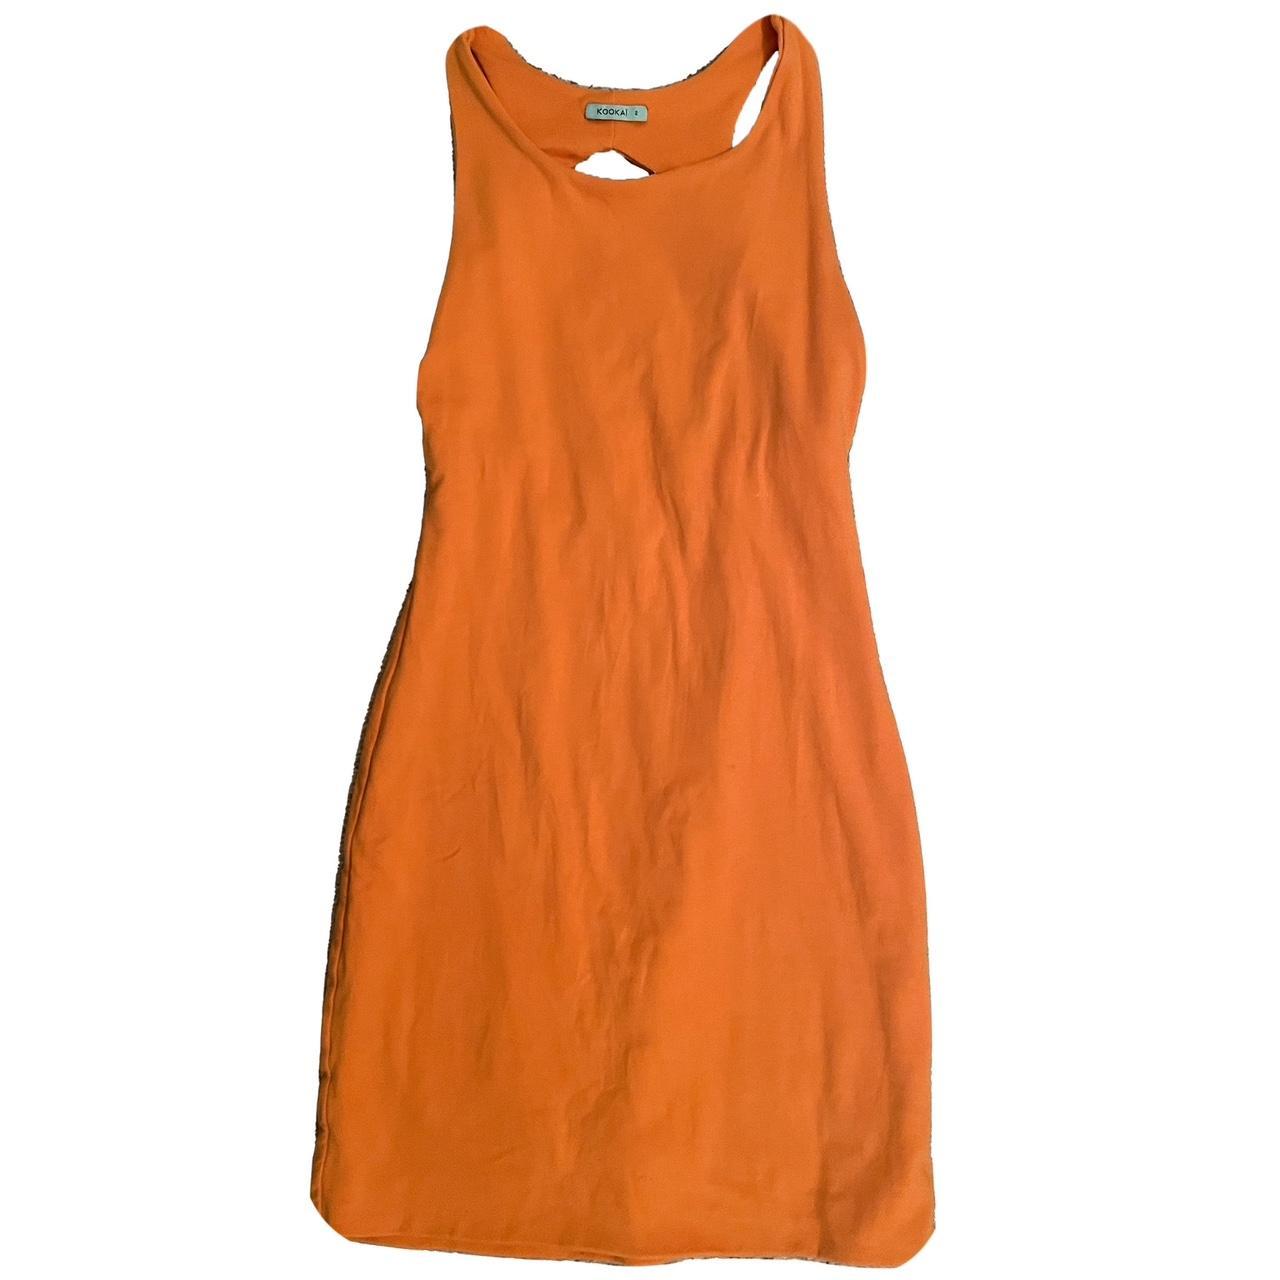 KOOKAÏ Women's Orange Dress | Depop